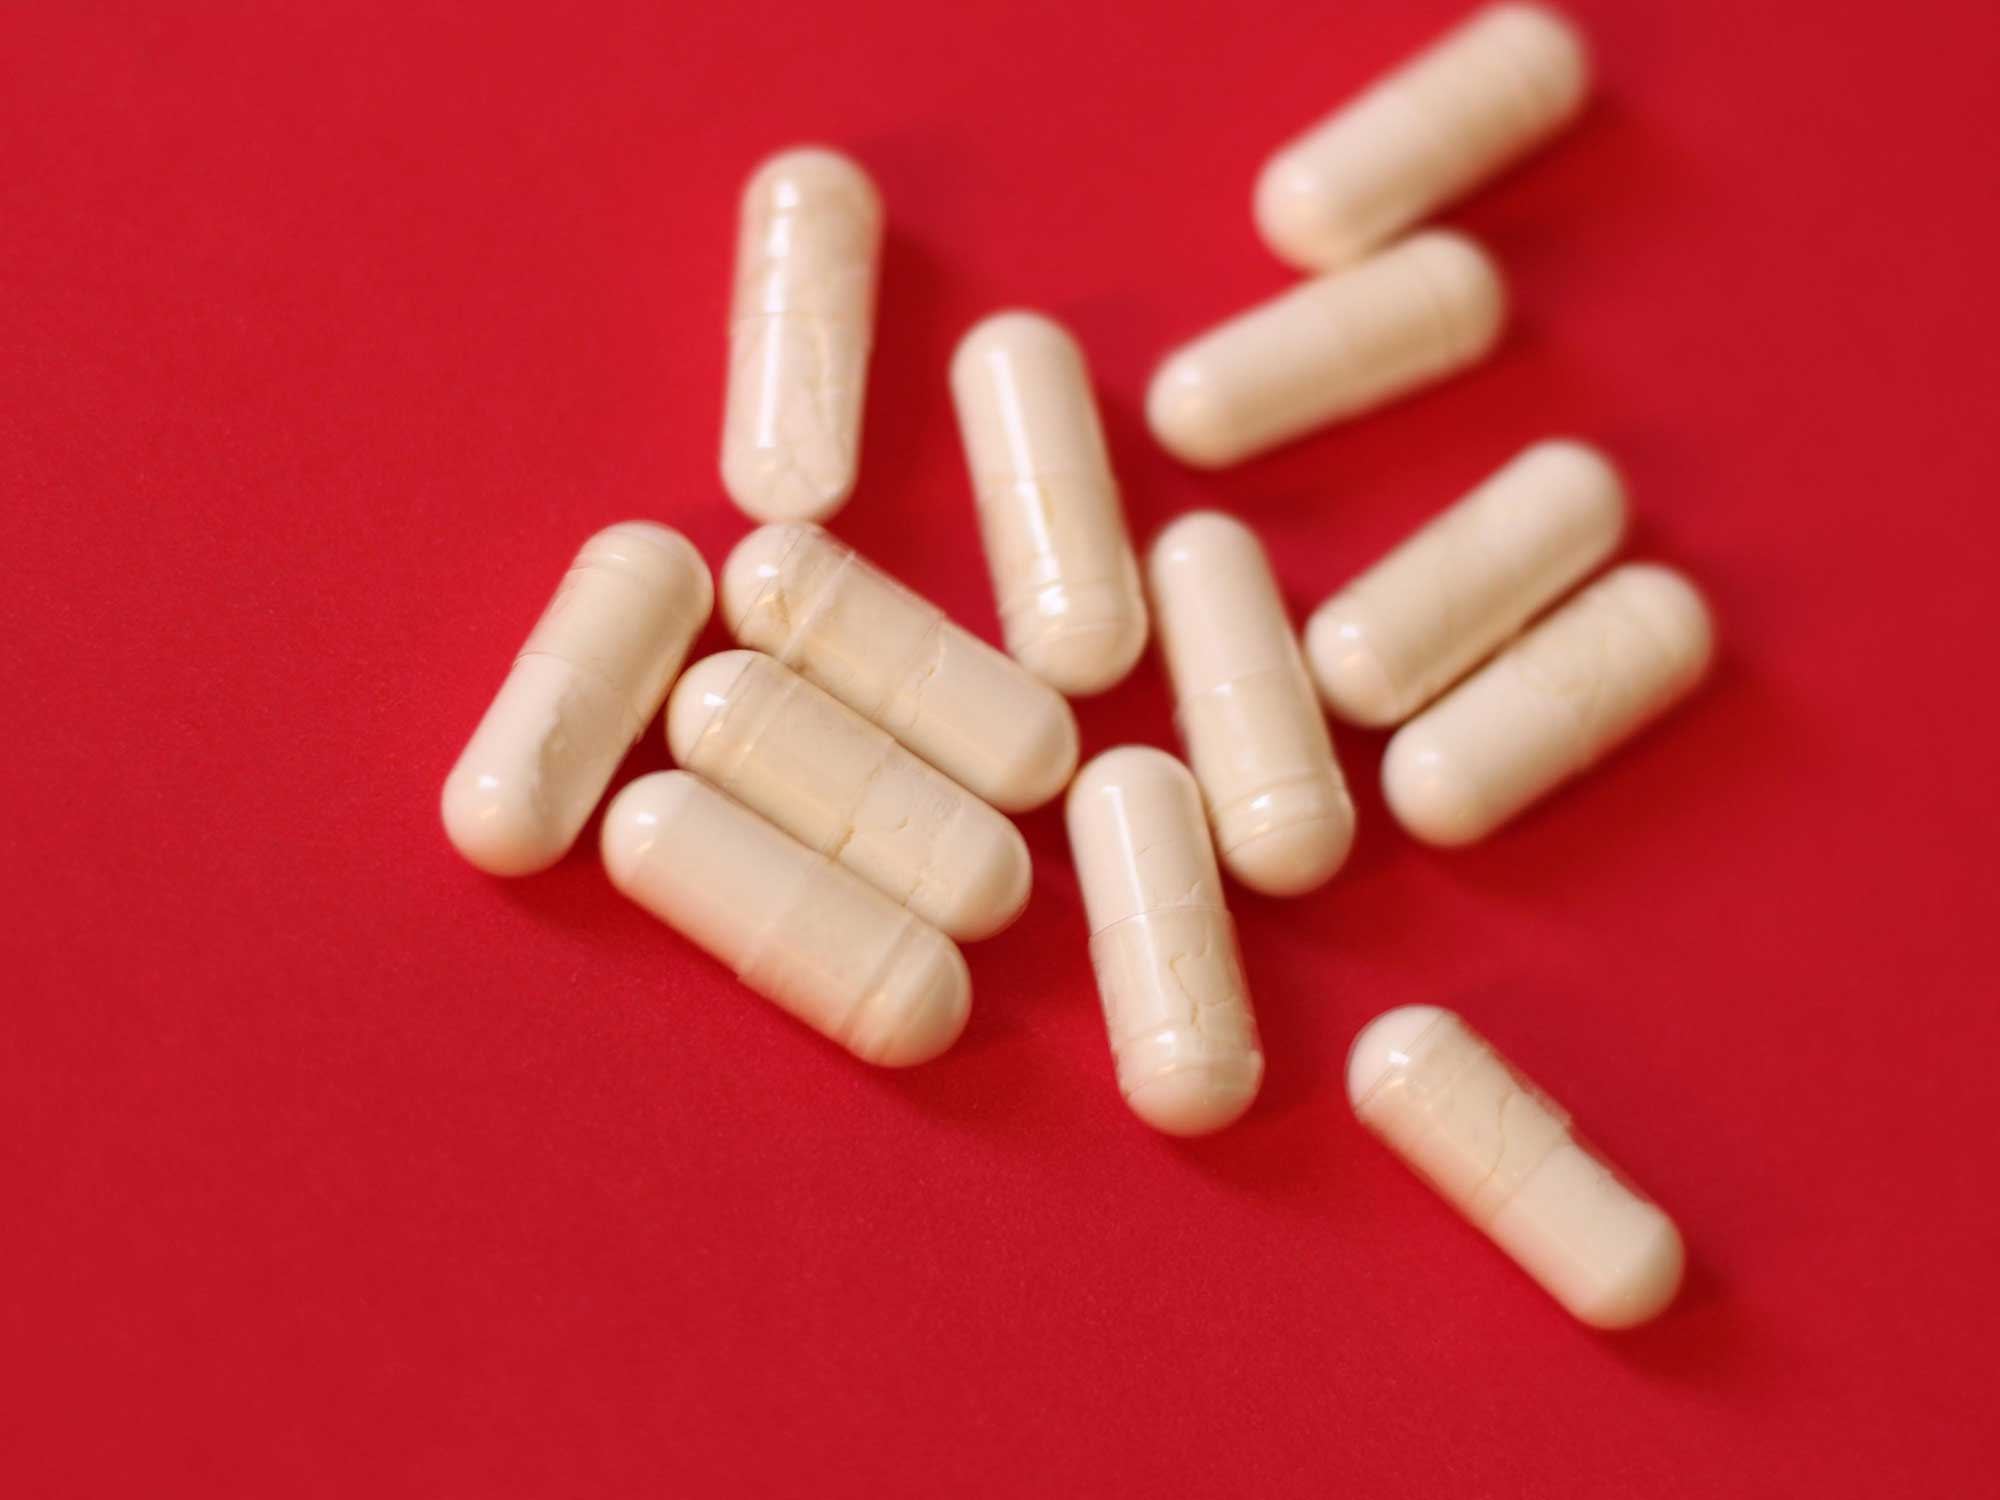 White diet pills on red background